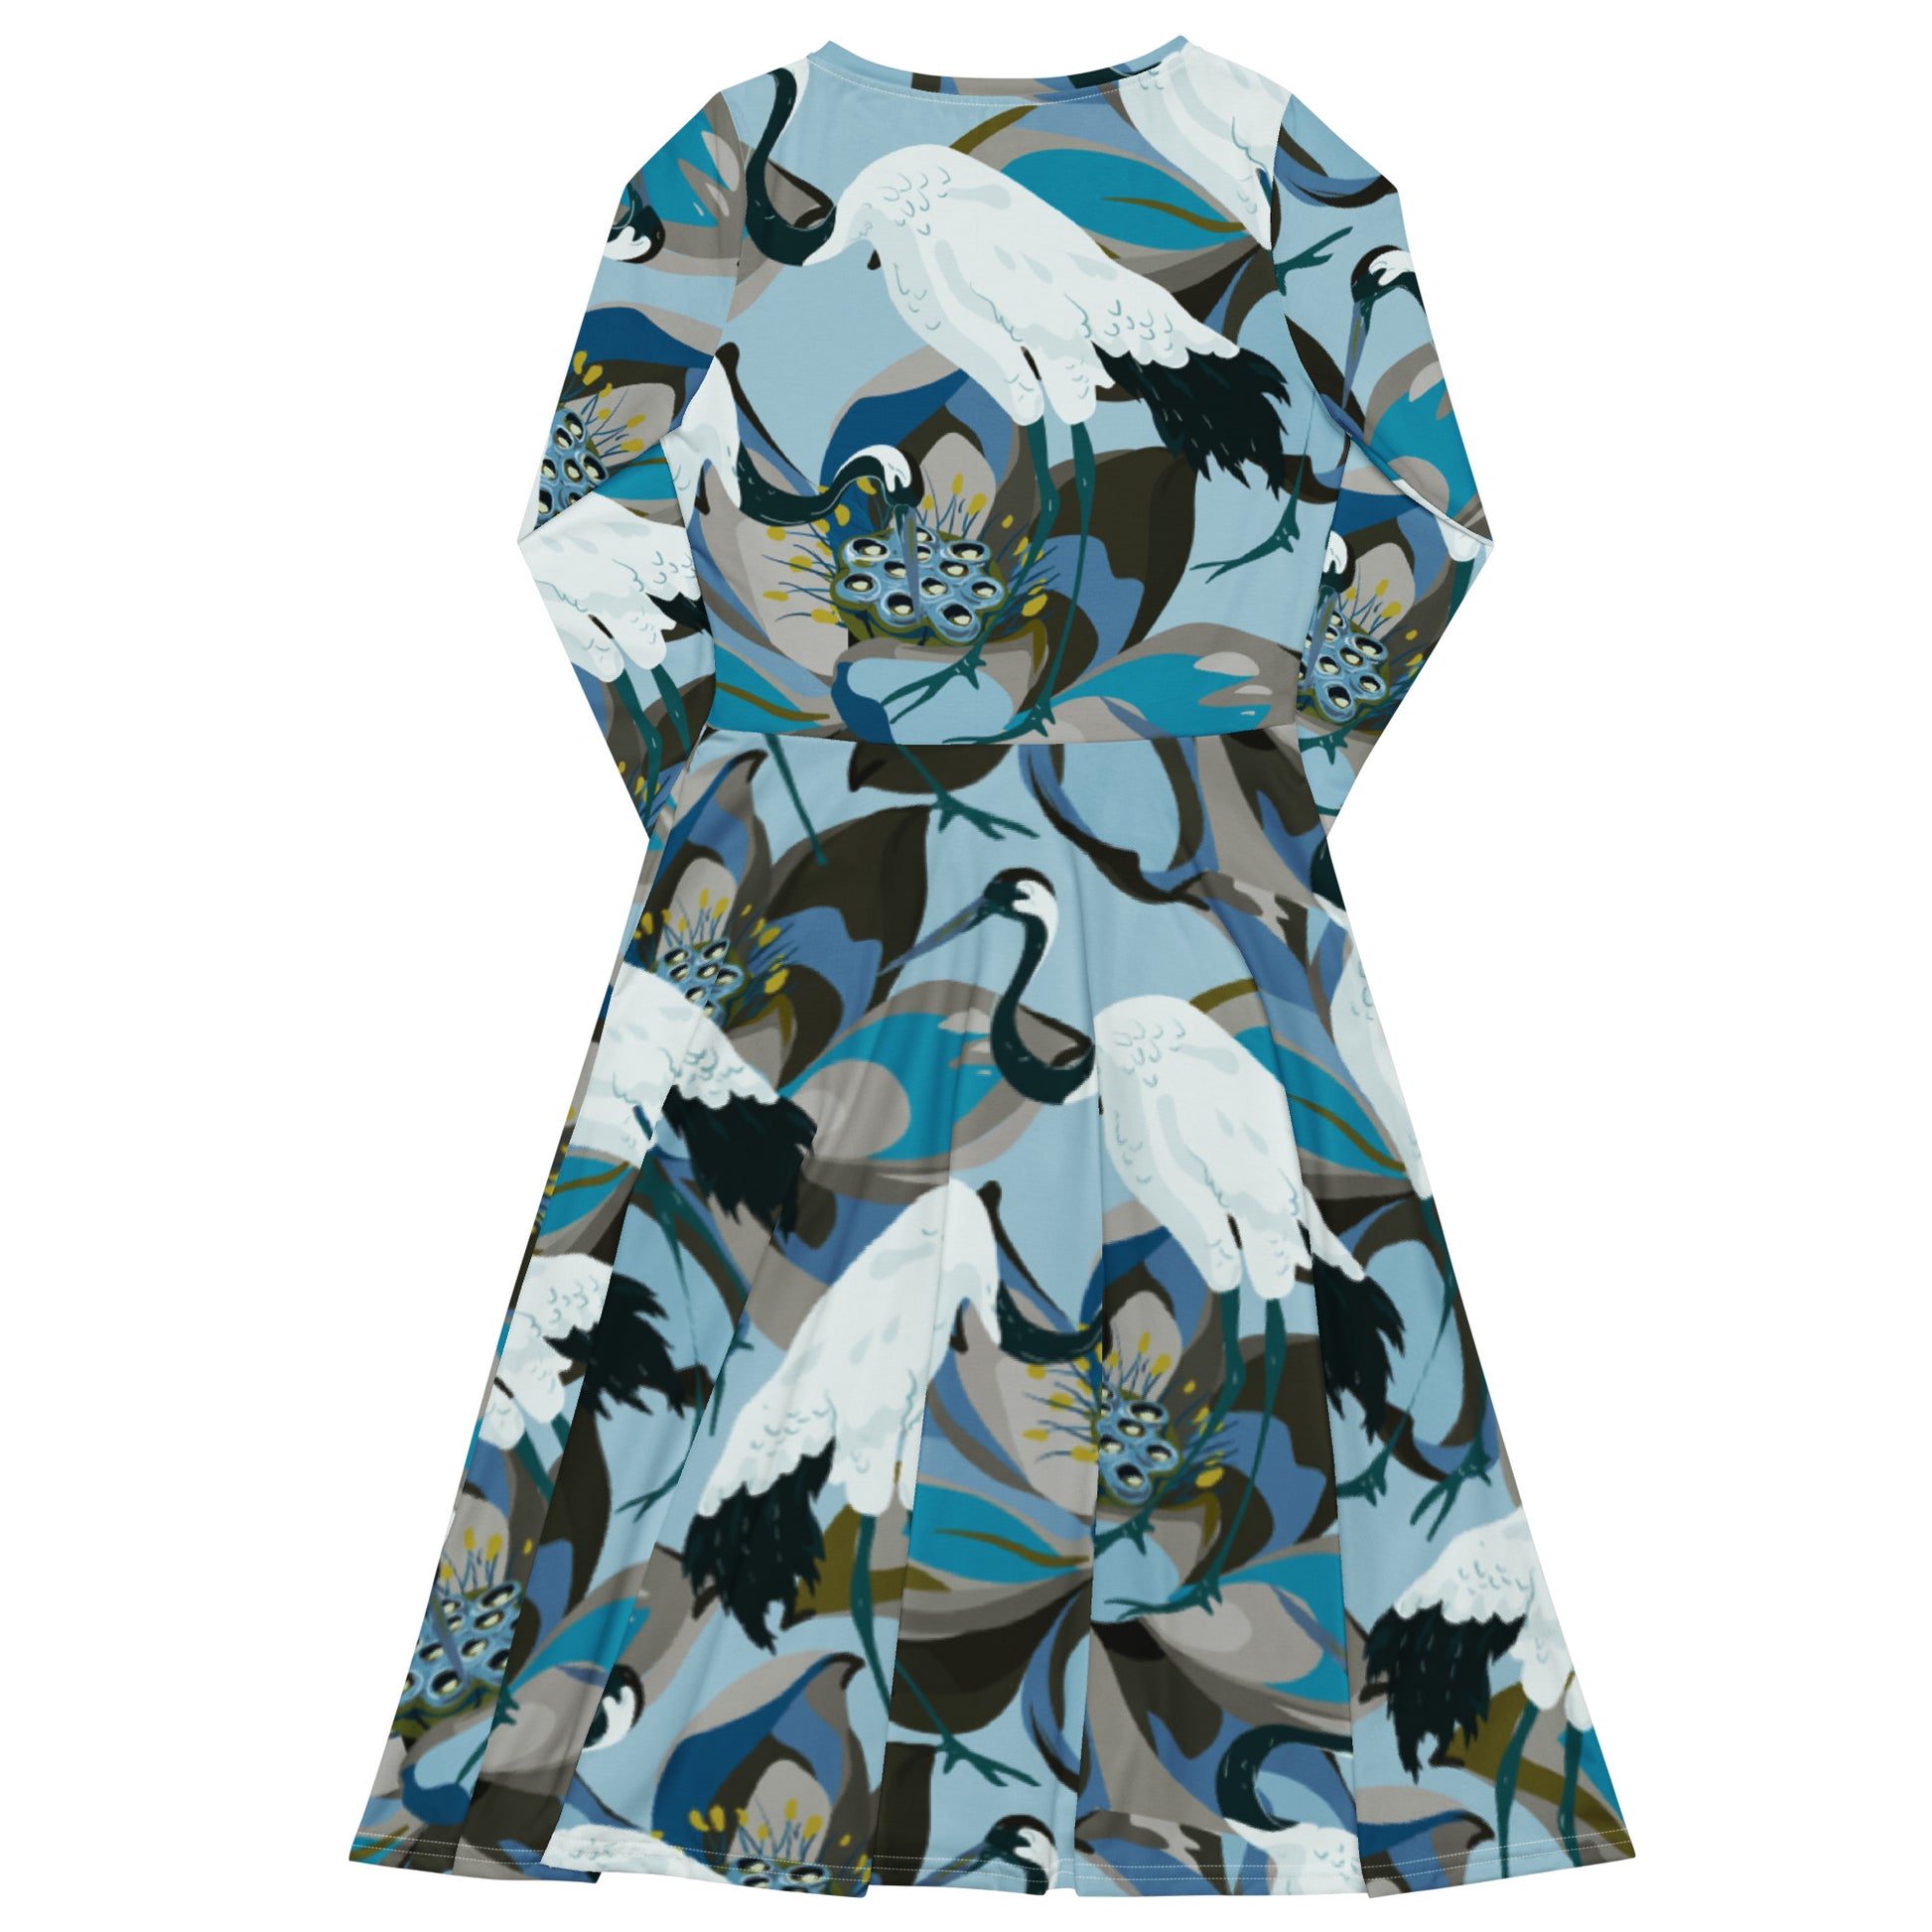 Kurki (Crane) - Long sleeve midi dress - Dresses- Print N Stuff - [designed in Turku FInland]